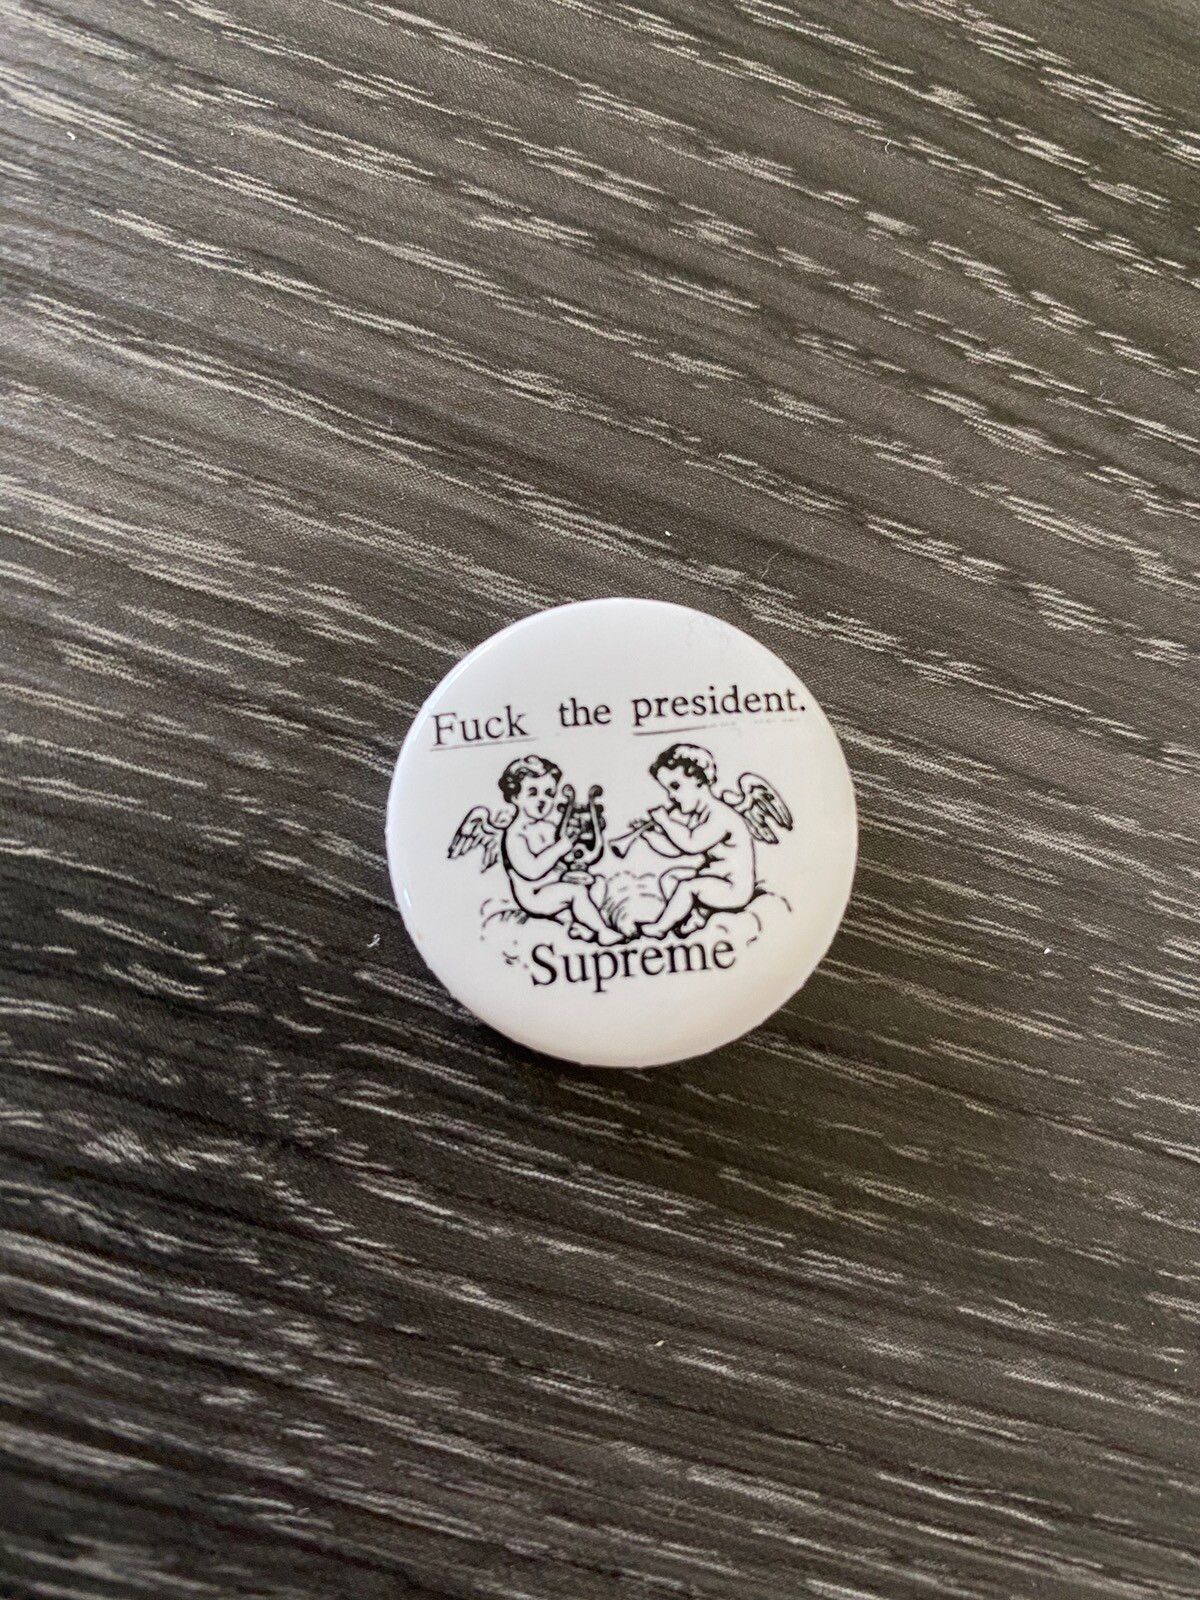 Supreme Fuck Pin | Grailed